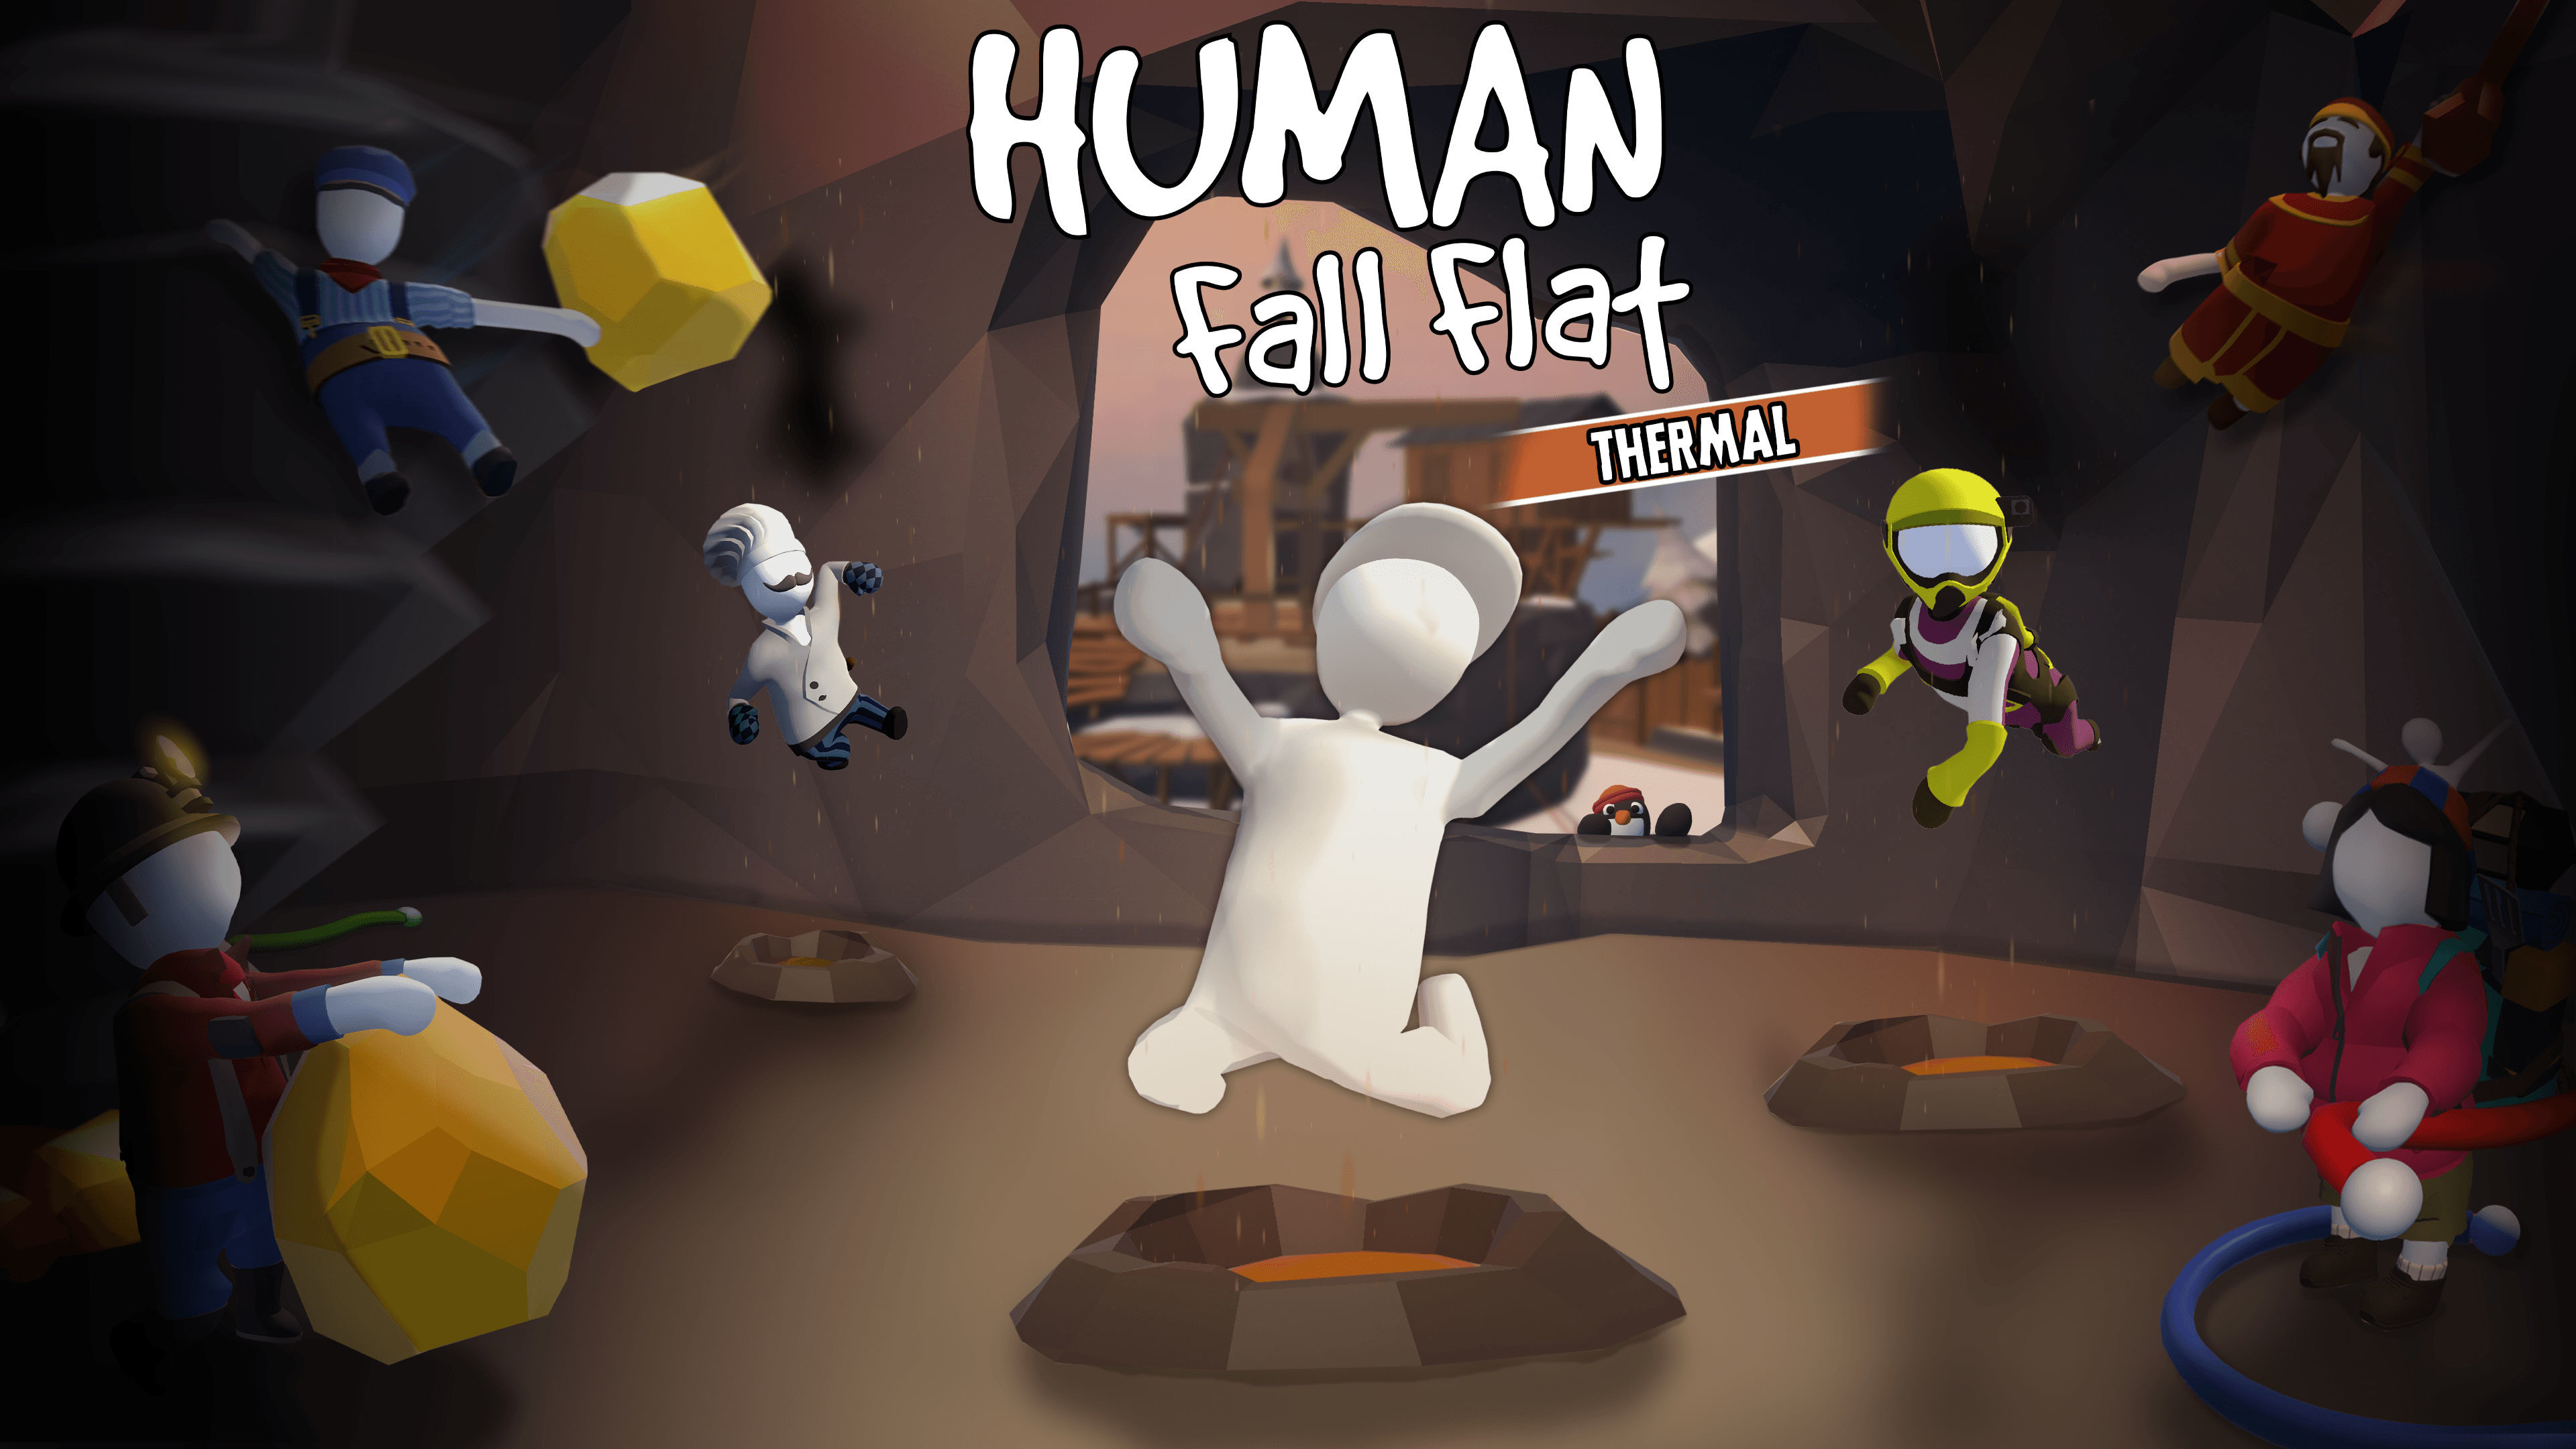 爆笑合作解謎作品 人類 跌落夢境 周年紀念版 盒裝版將於9 月發售 Human Fall Flat 巴哈姆特